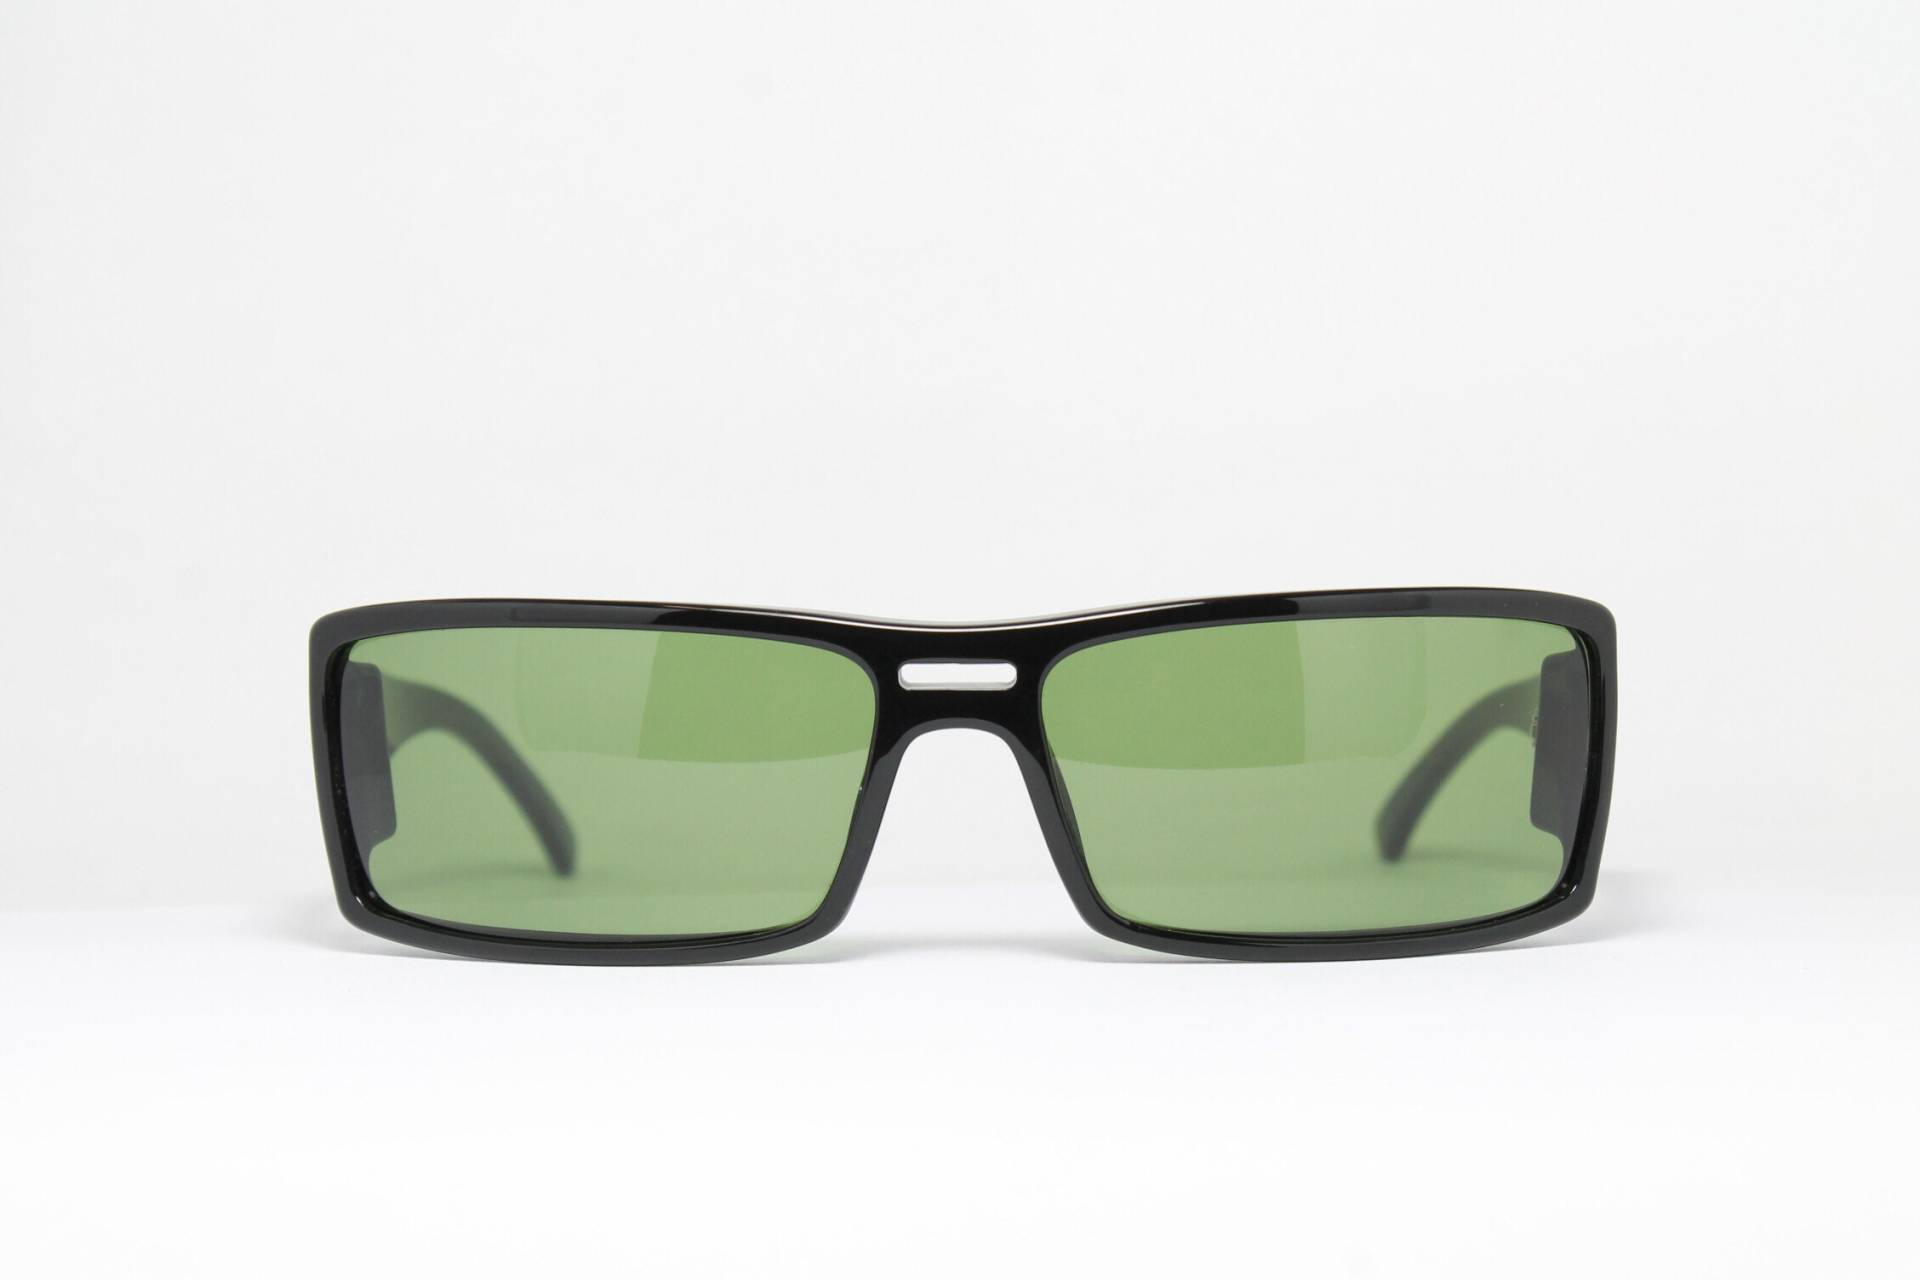 Eye Dc I 680 001 Grüne Gläser Rechteck Frankreich Seltene Einzigartige Echte Vintage-Sonnenbrille Lunettes Occhiali Bril Solglasögon Gafas E08 von VintageGermanGlasses